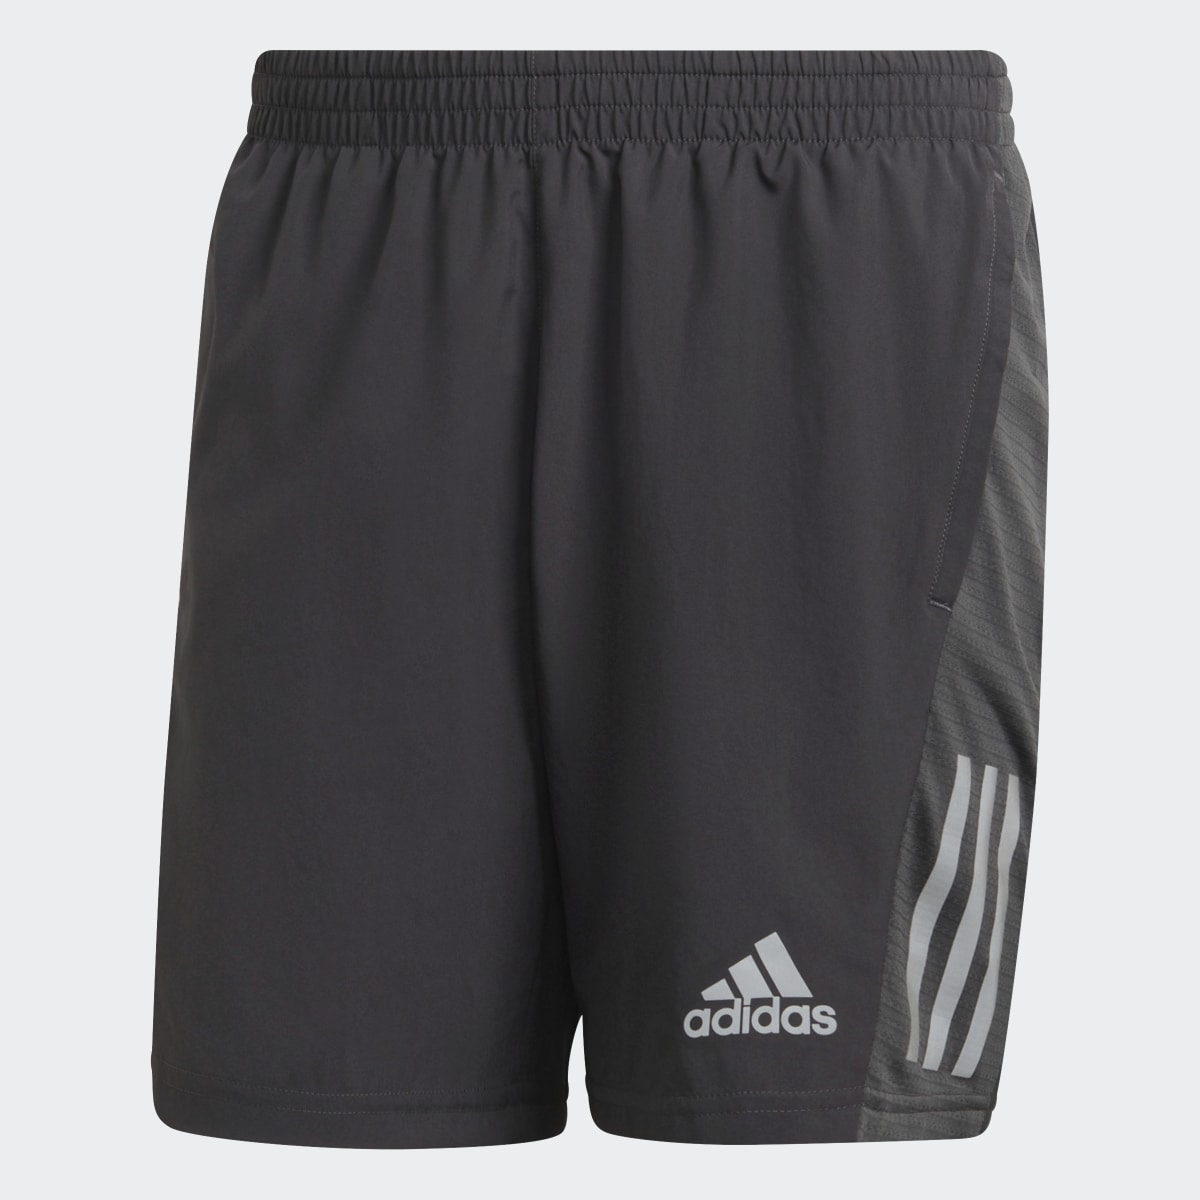 Adidas Own the Run Shorts. 5